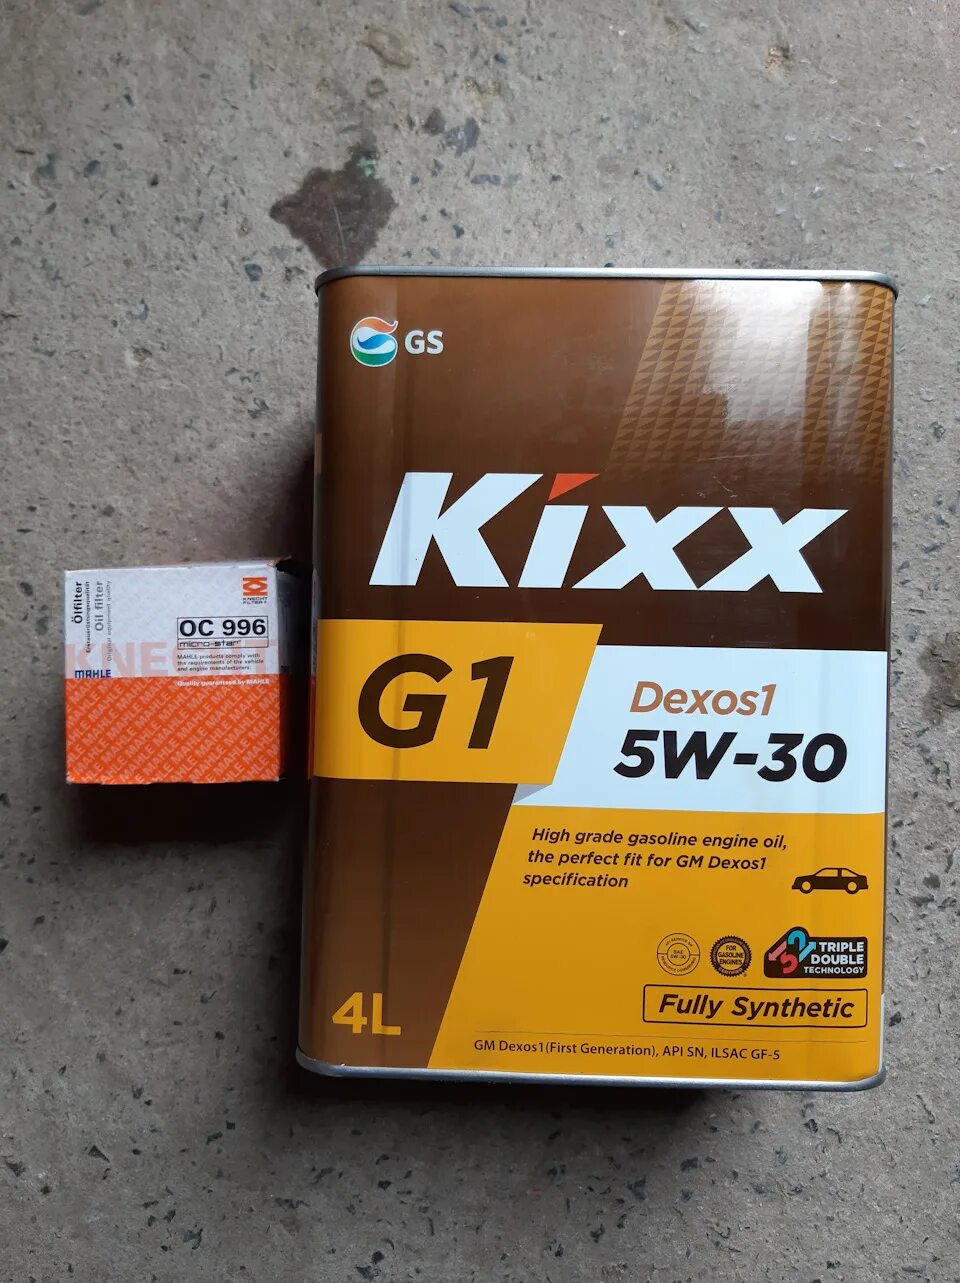 Kixx g1 5w 30 моторное масло. Масло Кикс g1 5w30. Масло Кикс 5w30 gq. Kixx g1 5w-30. Kixx g1 dexos1 5w-30.